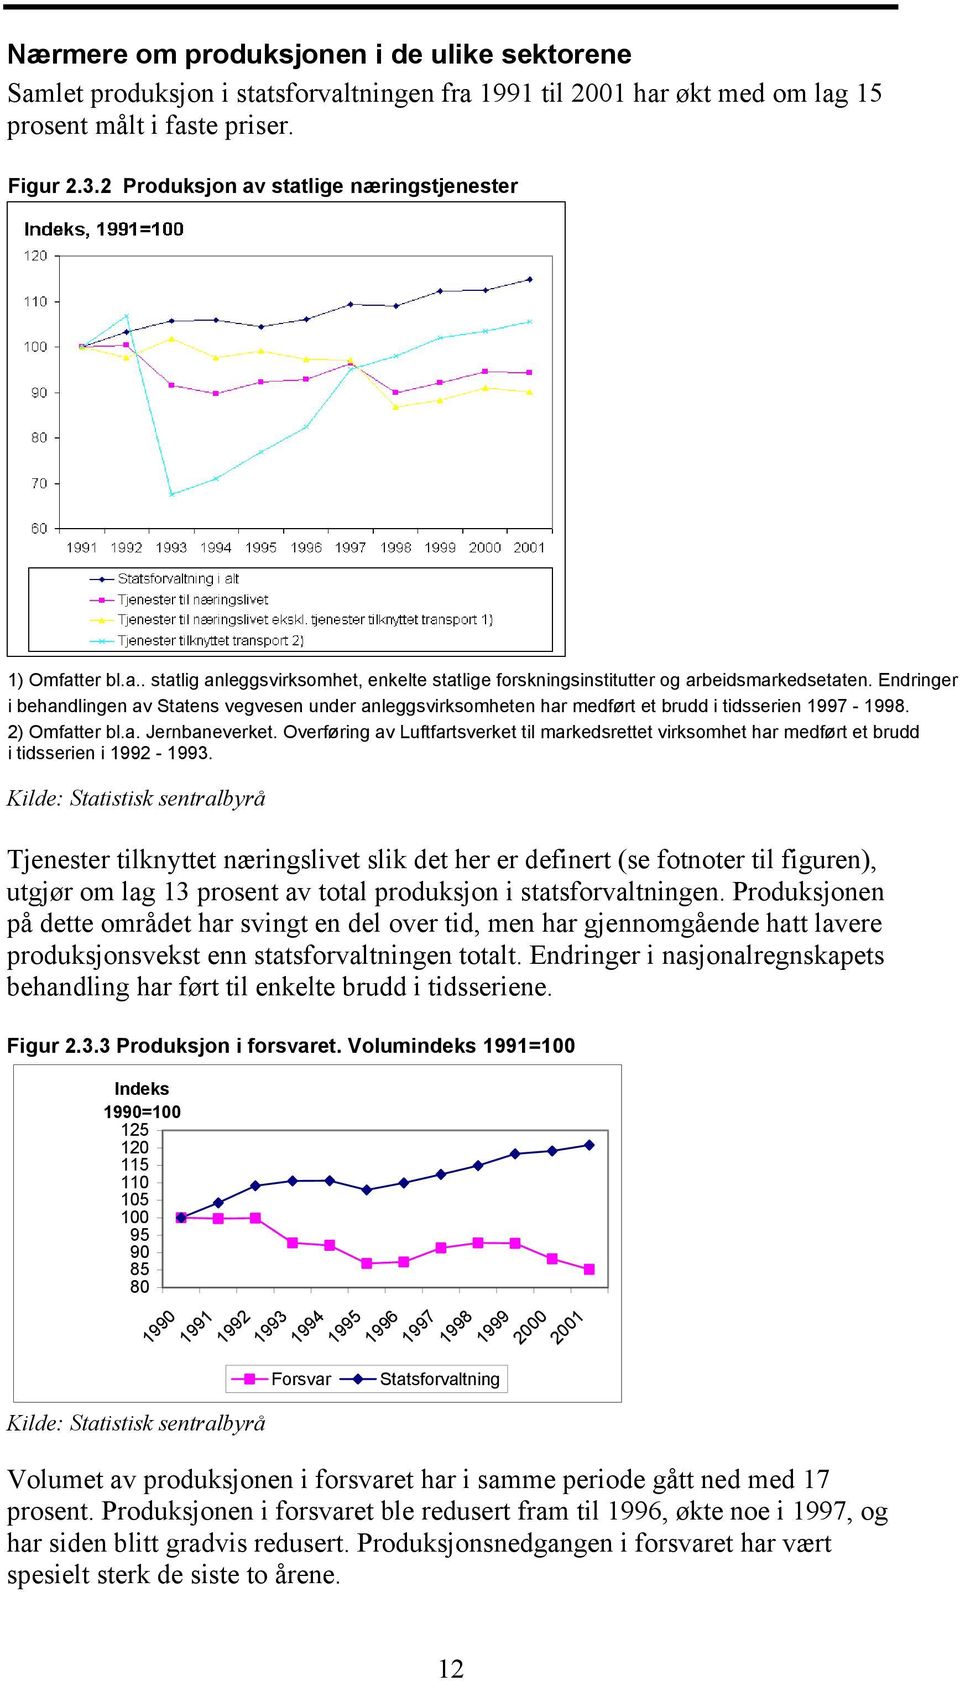 Endringer i behandlingen av Statens vegvesen under anleggsvirksomheten har medført et brudd i tidsserien 1997-1998. 2) Omfatter bl.a. Jernbaneverket.